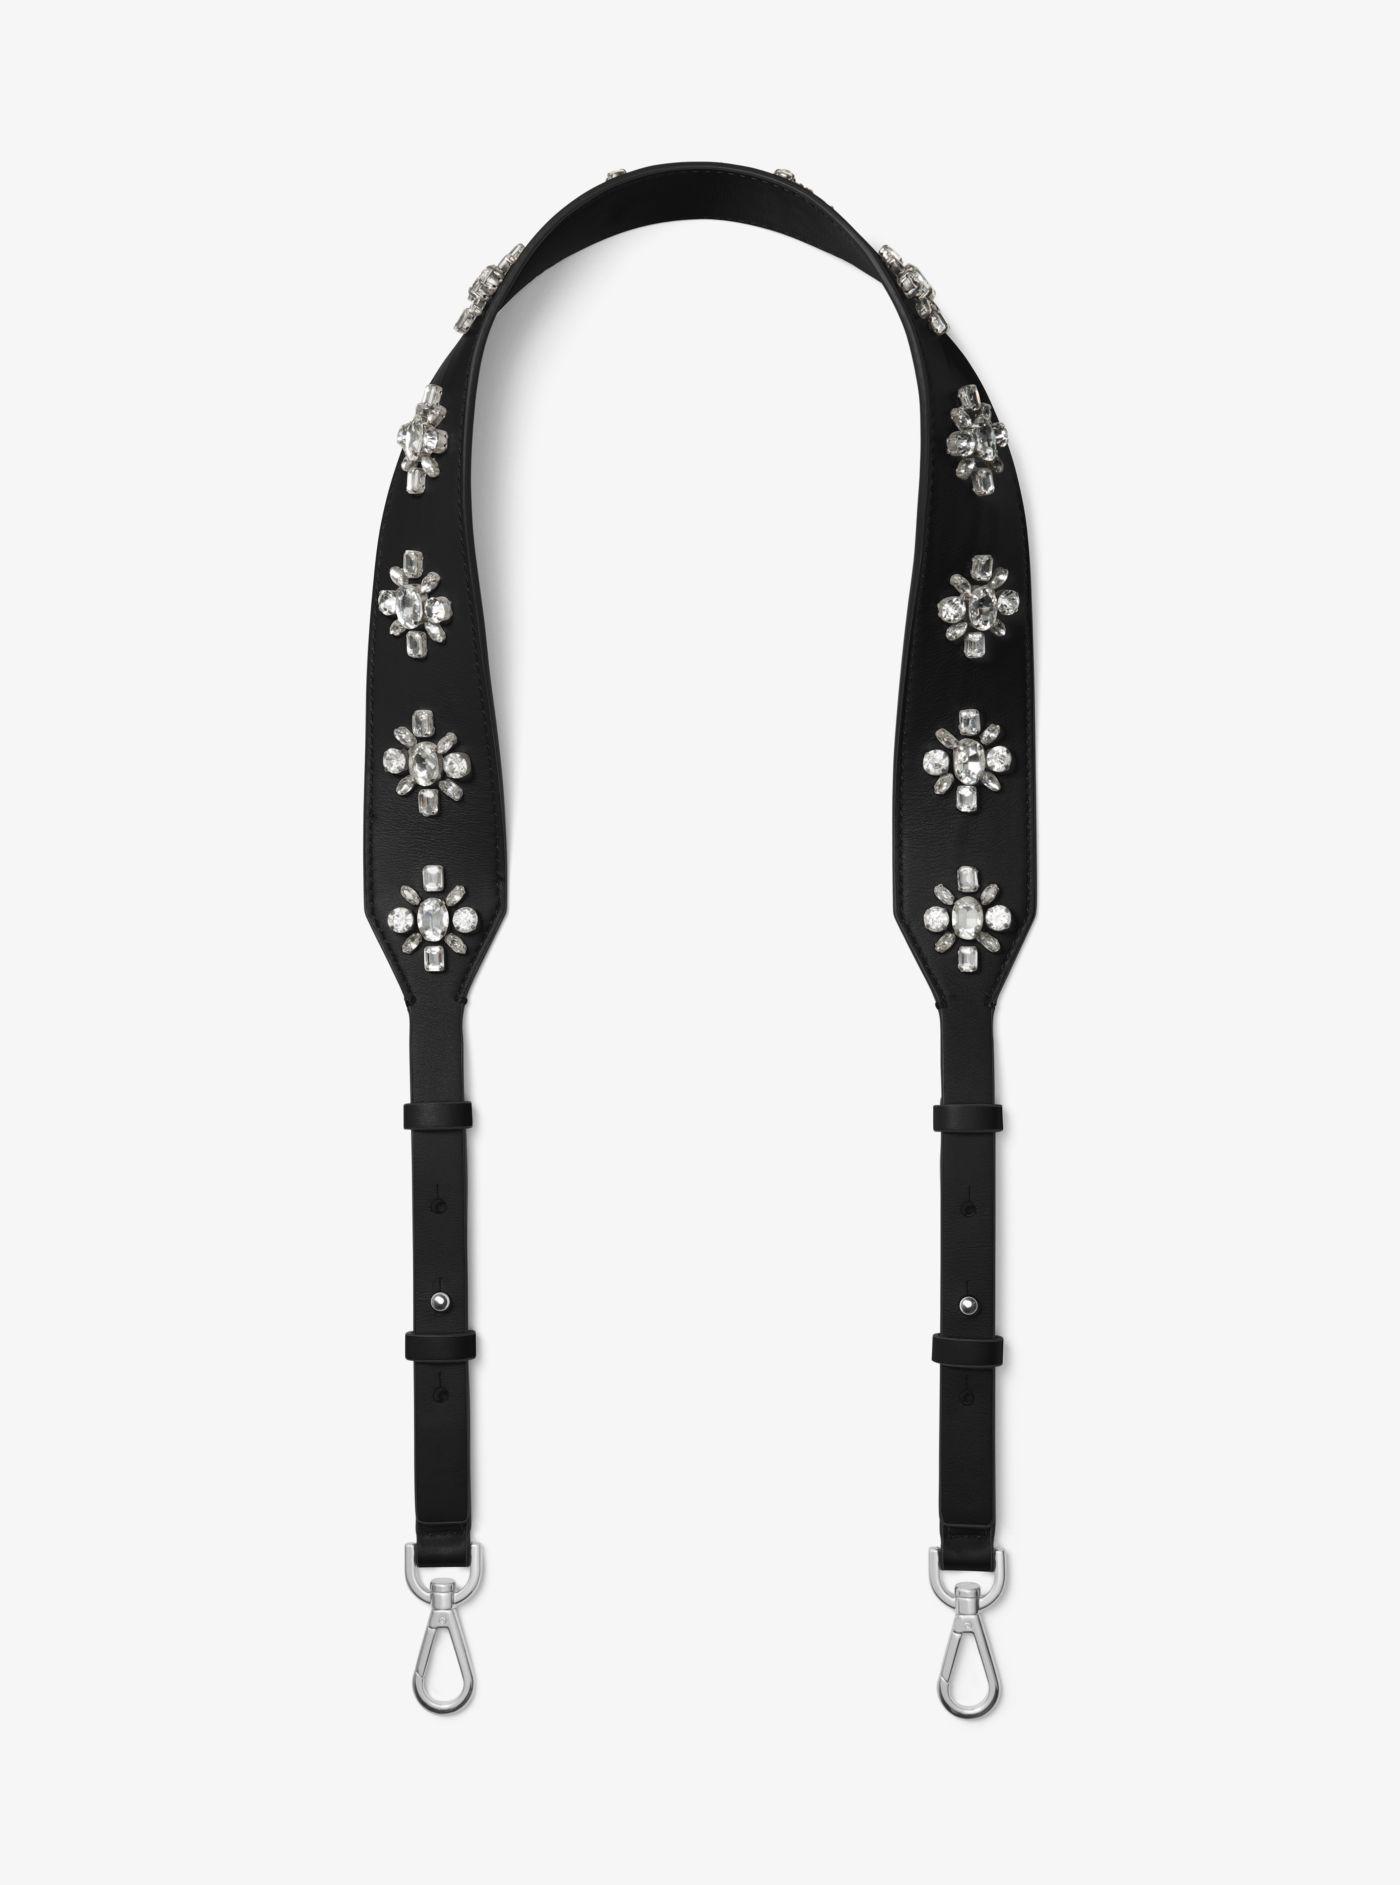 Michael Kors Floral-embellished Leather Handbag Strap in Black | Lyst